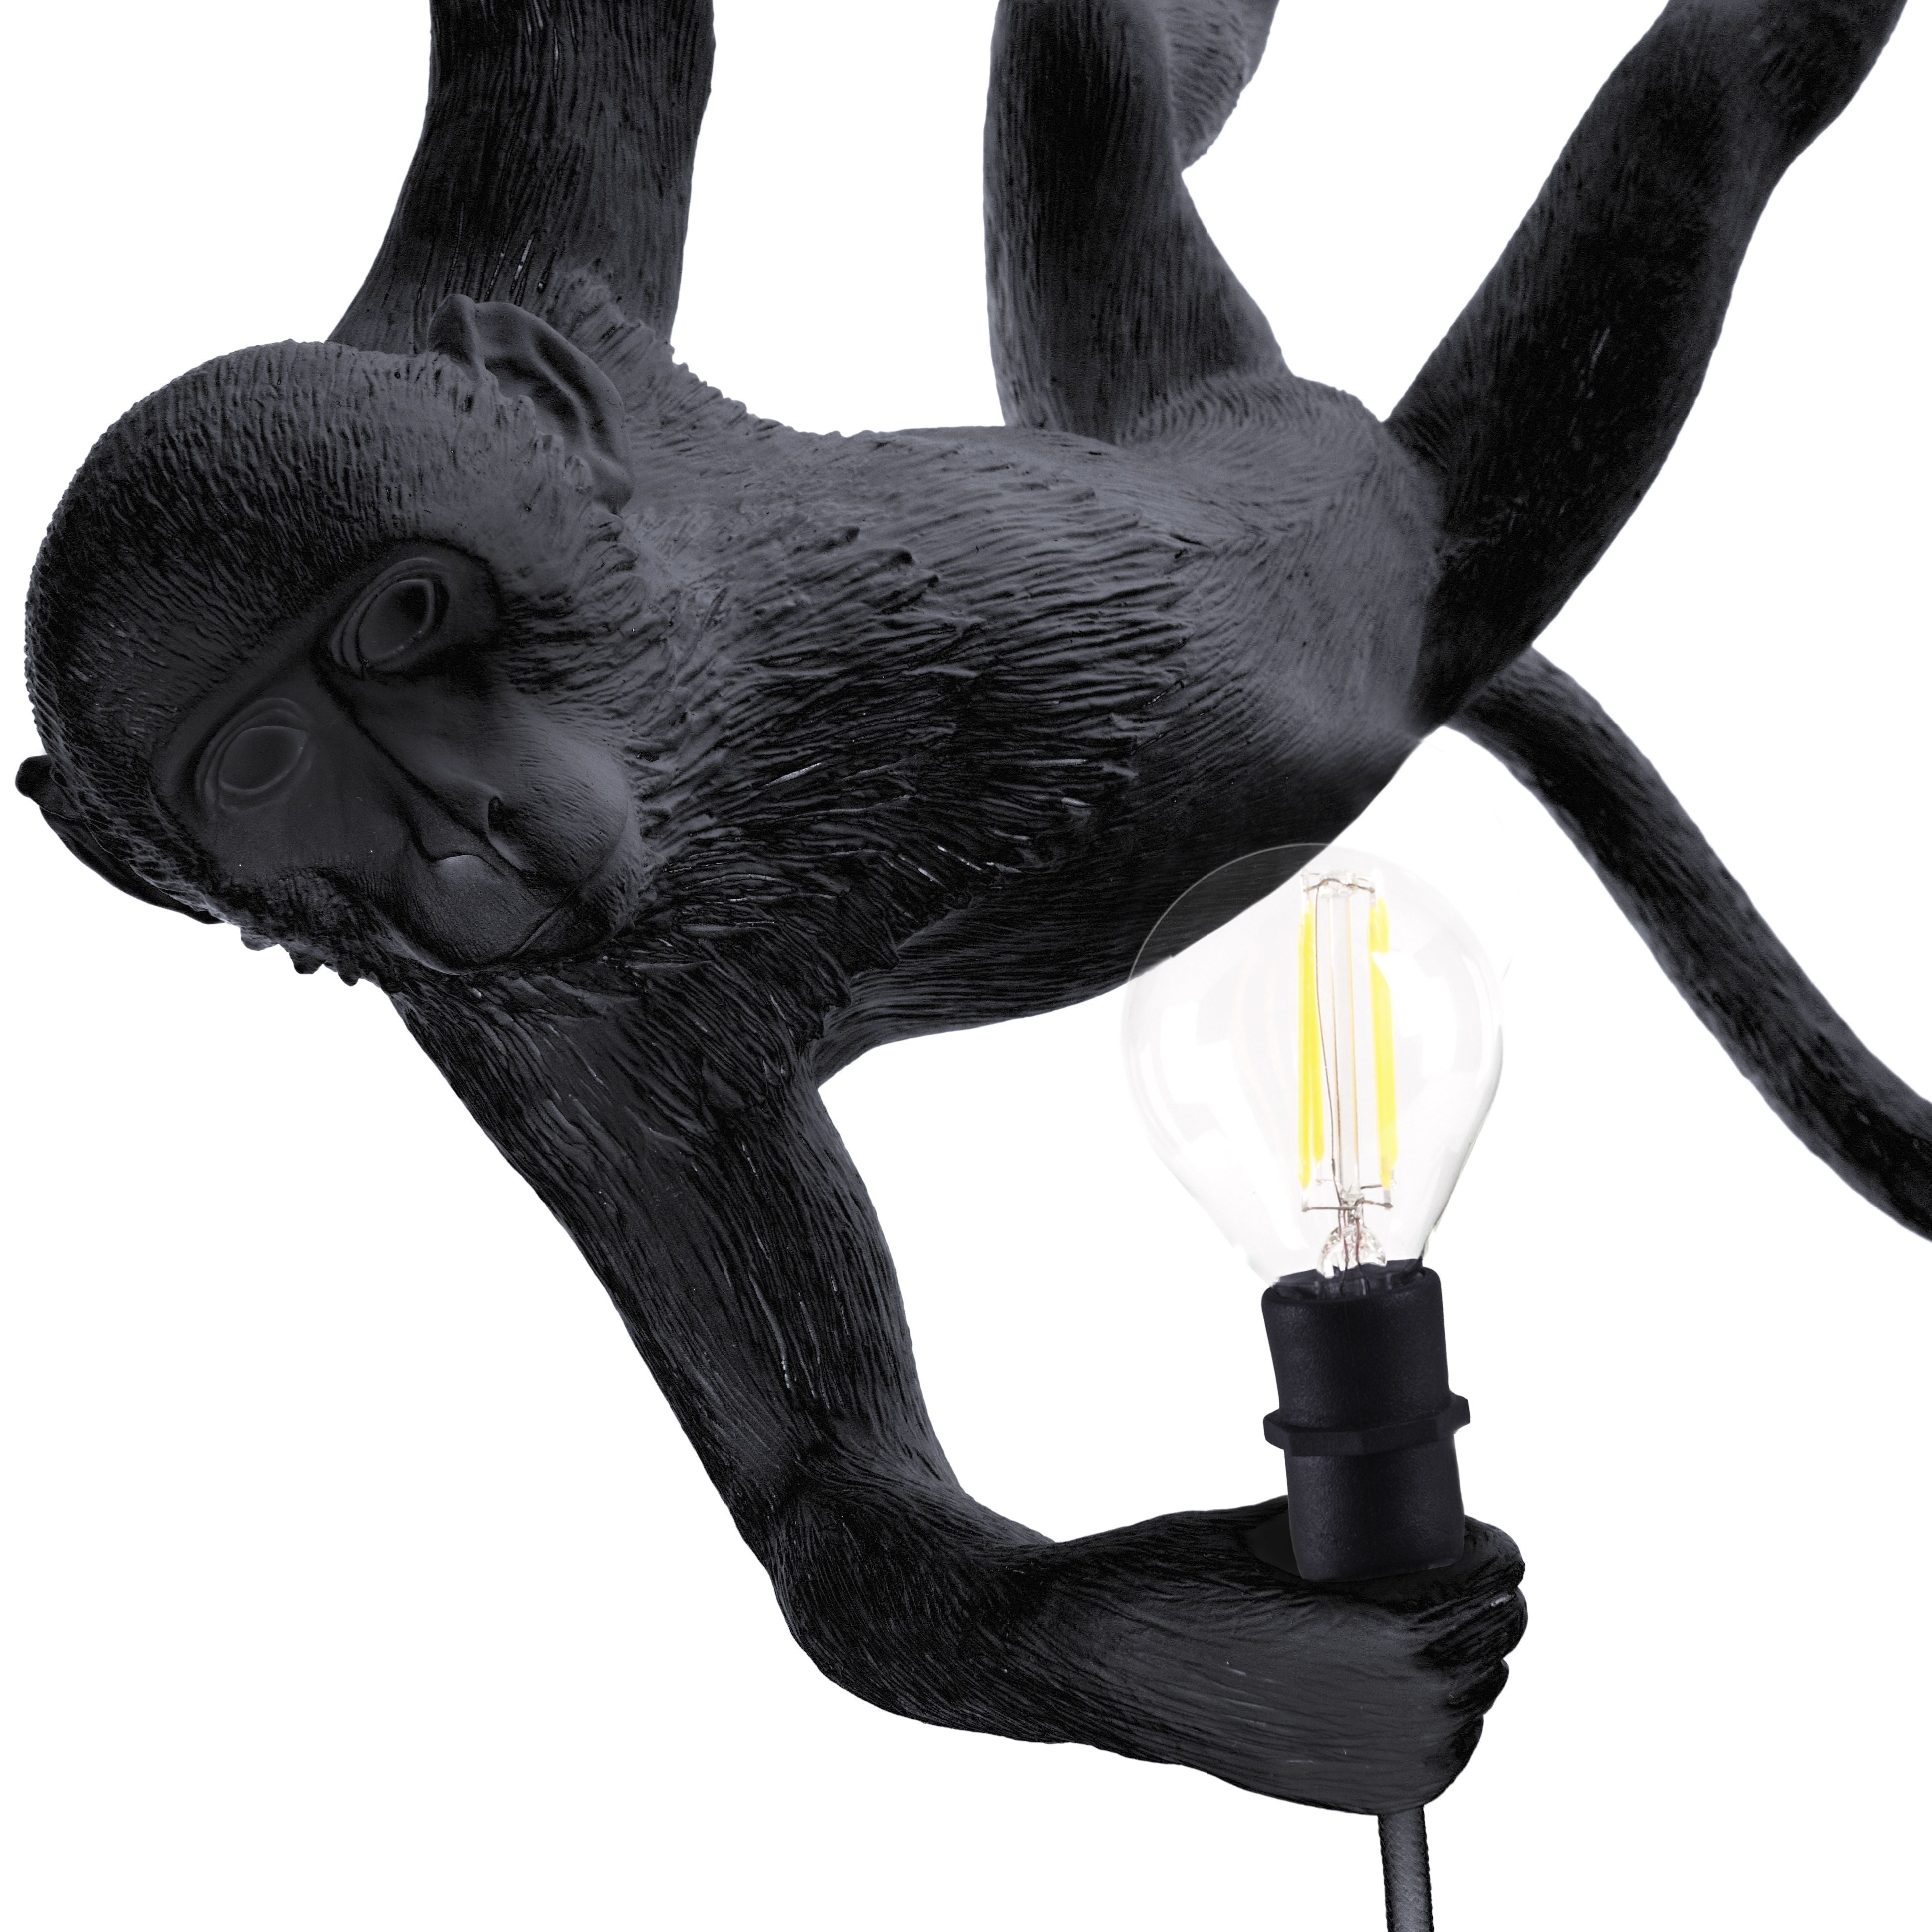 Seletti Monkey Outdoor Lamp Black, Swing